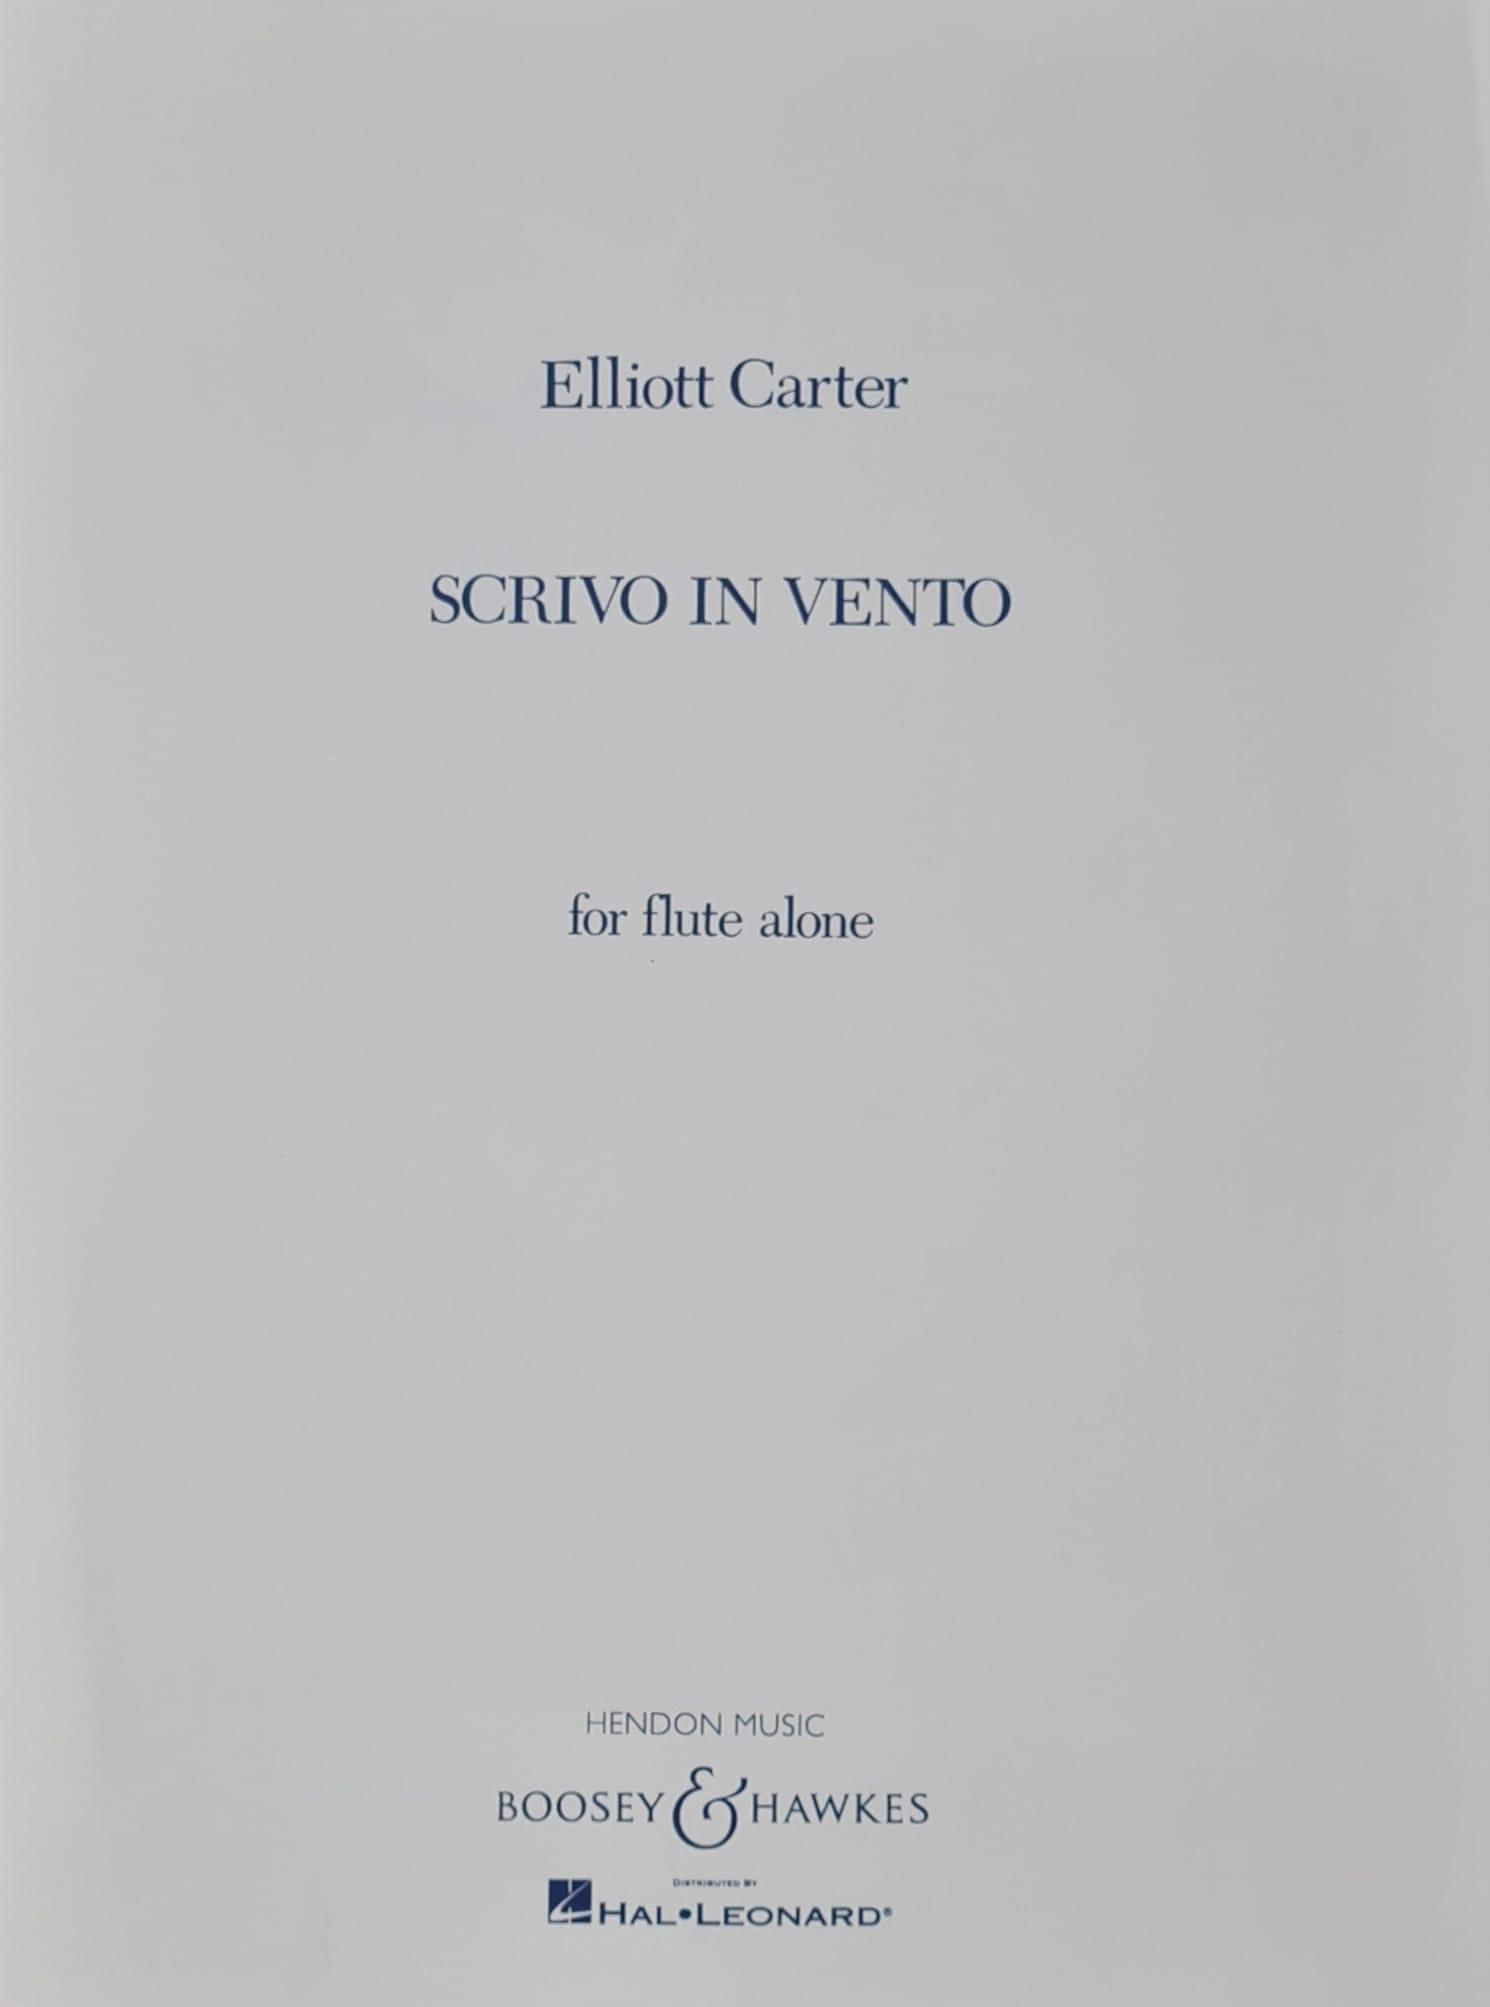 Scrivo In Vento - Elliott Carter | Suono Flauti